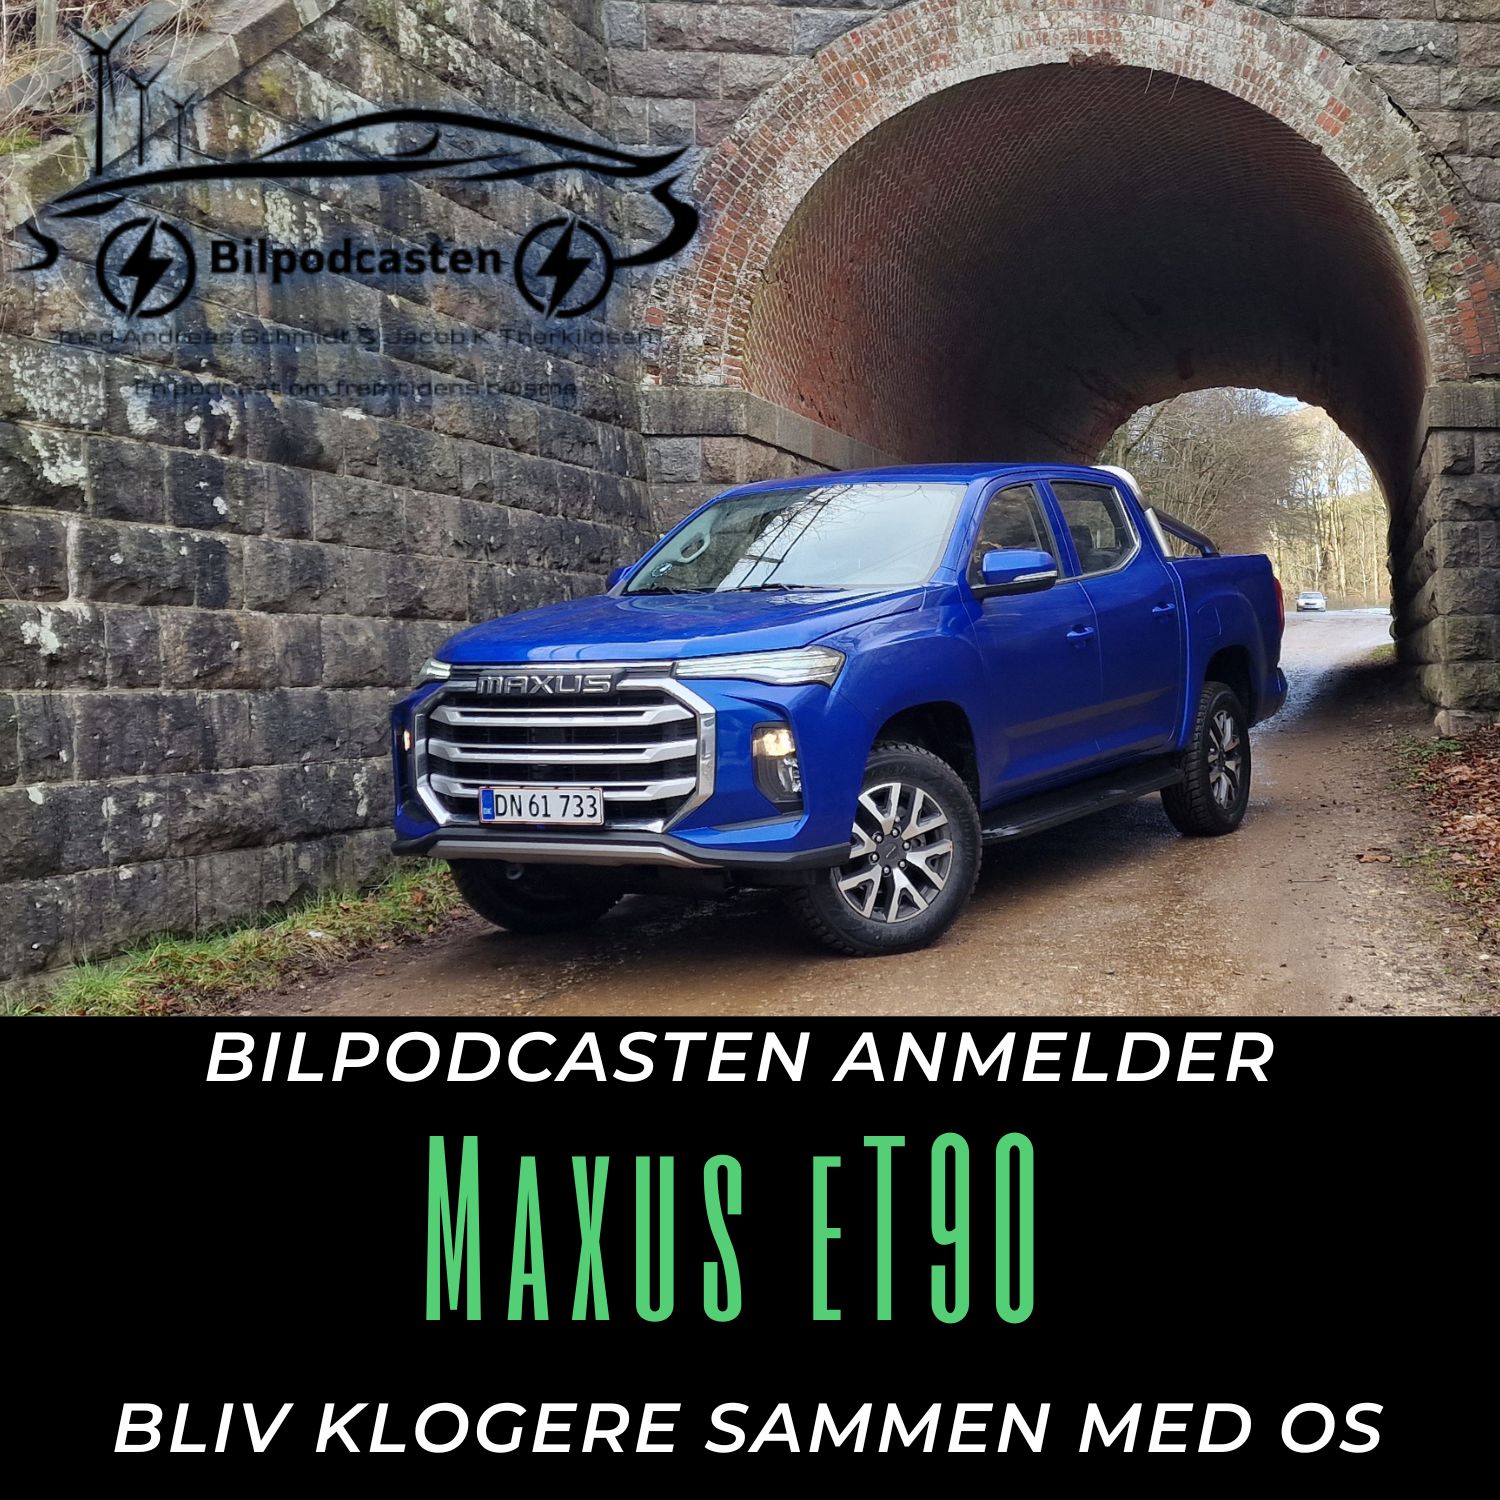 Bil anmeldelse af Maxus eT90, Bilpodcastens test af den elektriske pickup truck.